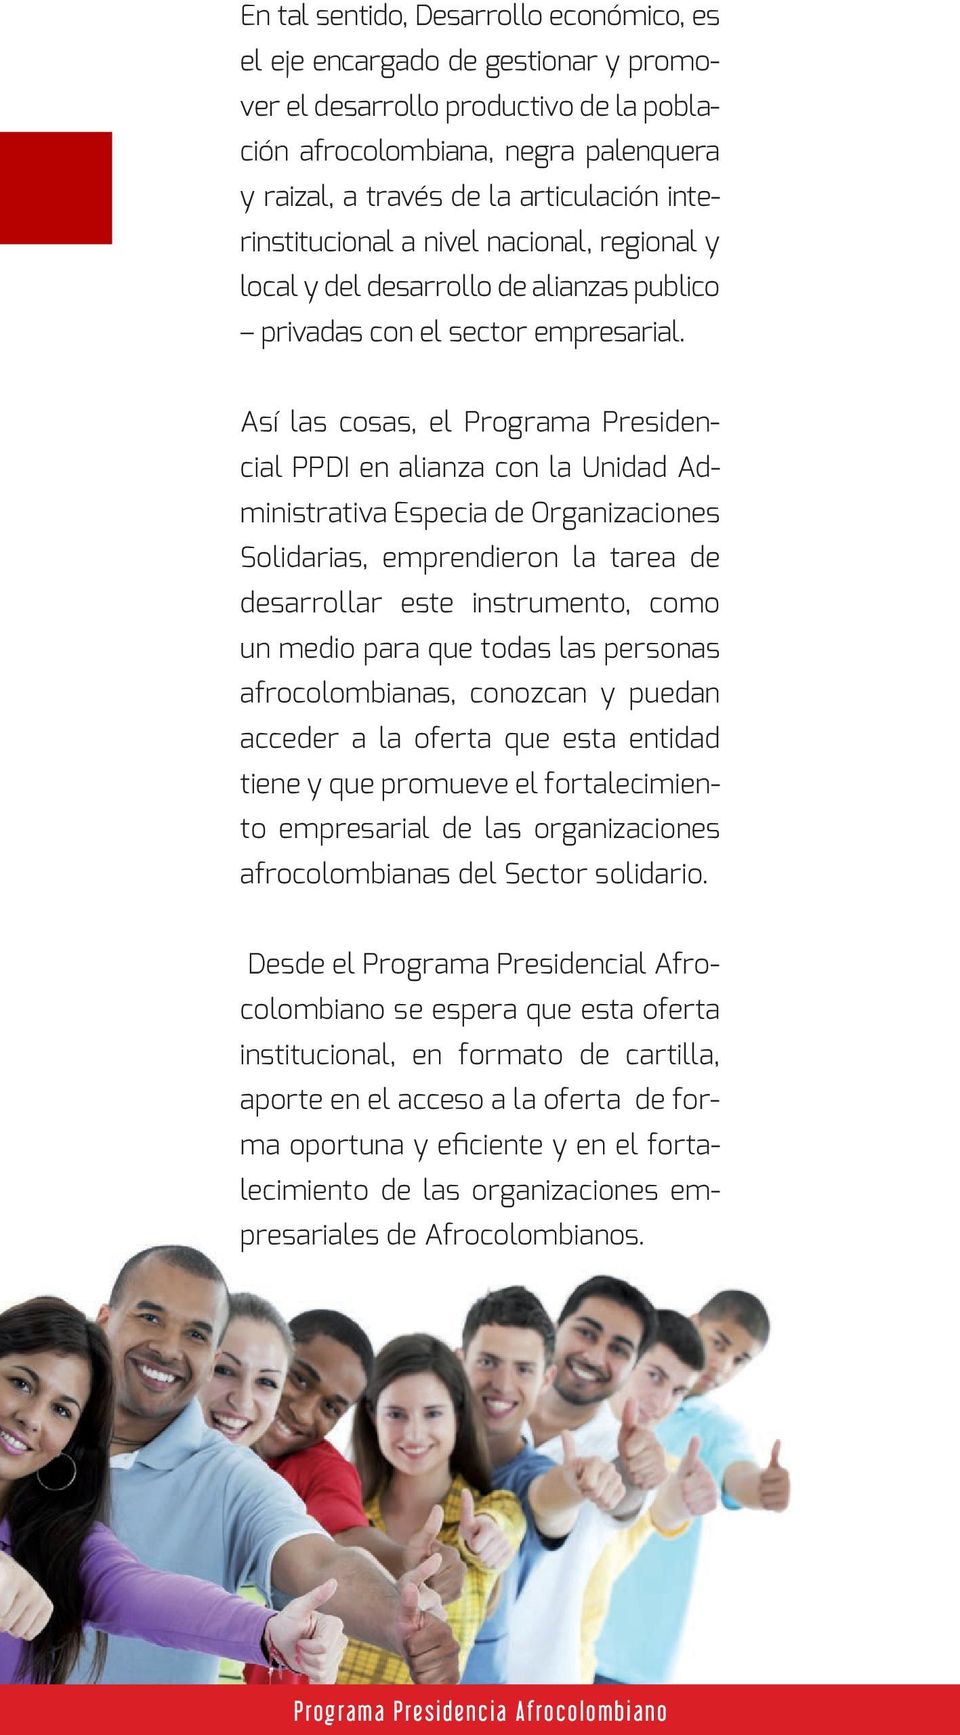 Así las cosas, el Programa Presidencial PPDI en alianza con la Unidad Administrativa Especia de Organizaciones Solidarias, emprendieron la tarea de desarrollar este instrumento, como un medio para